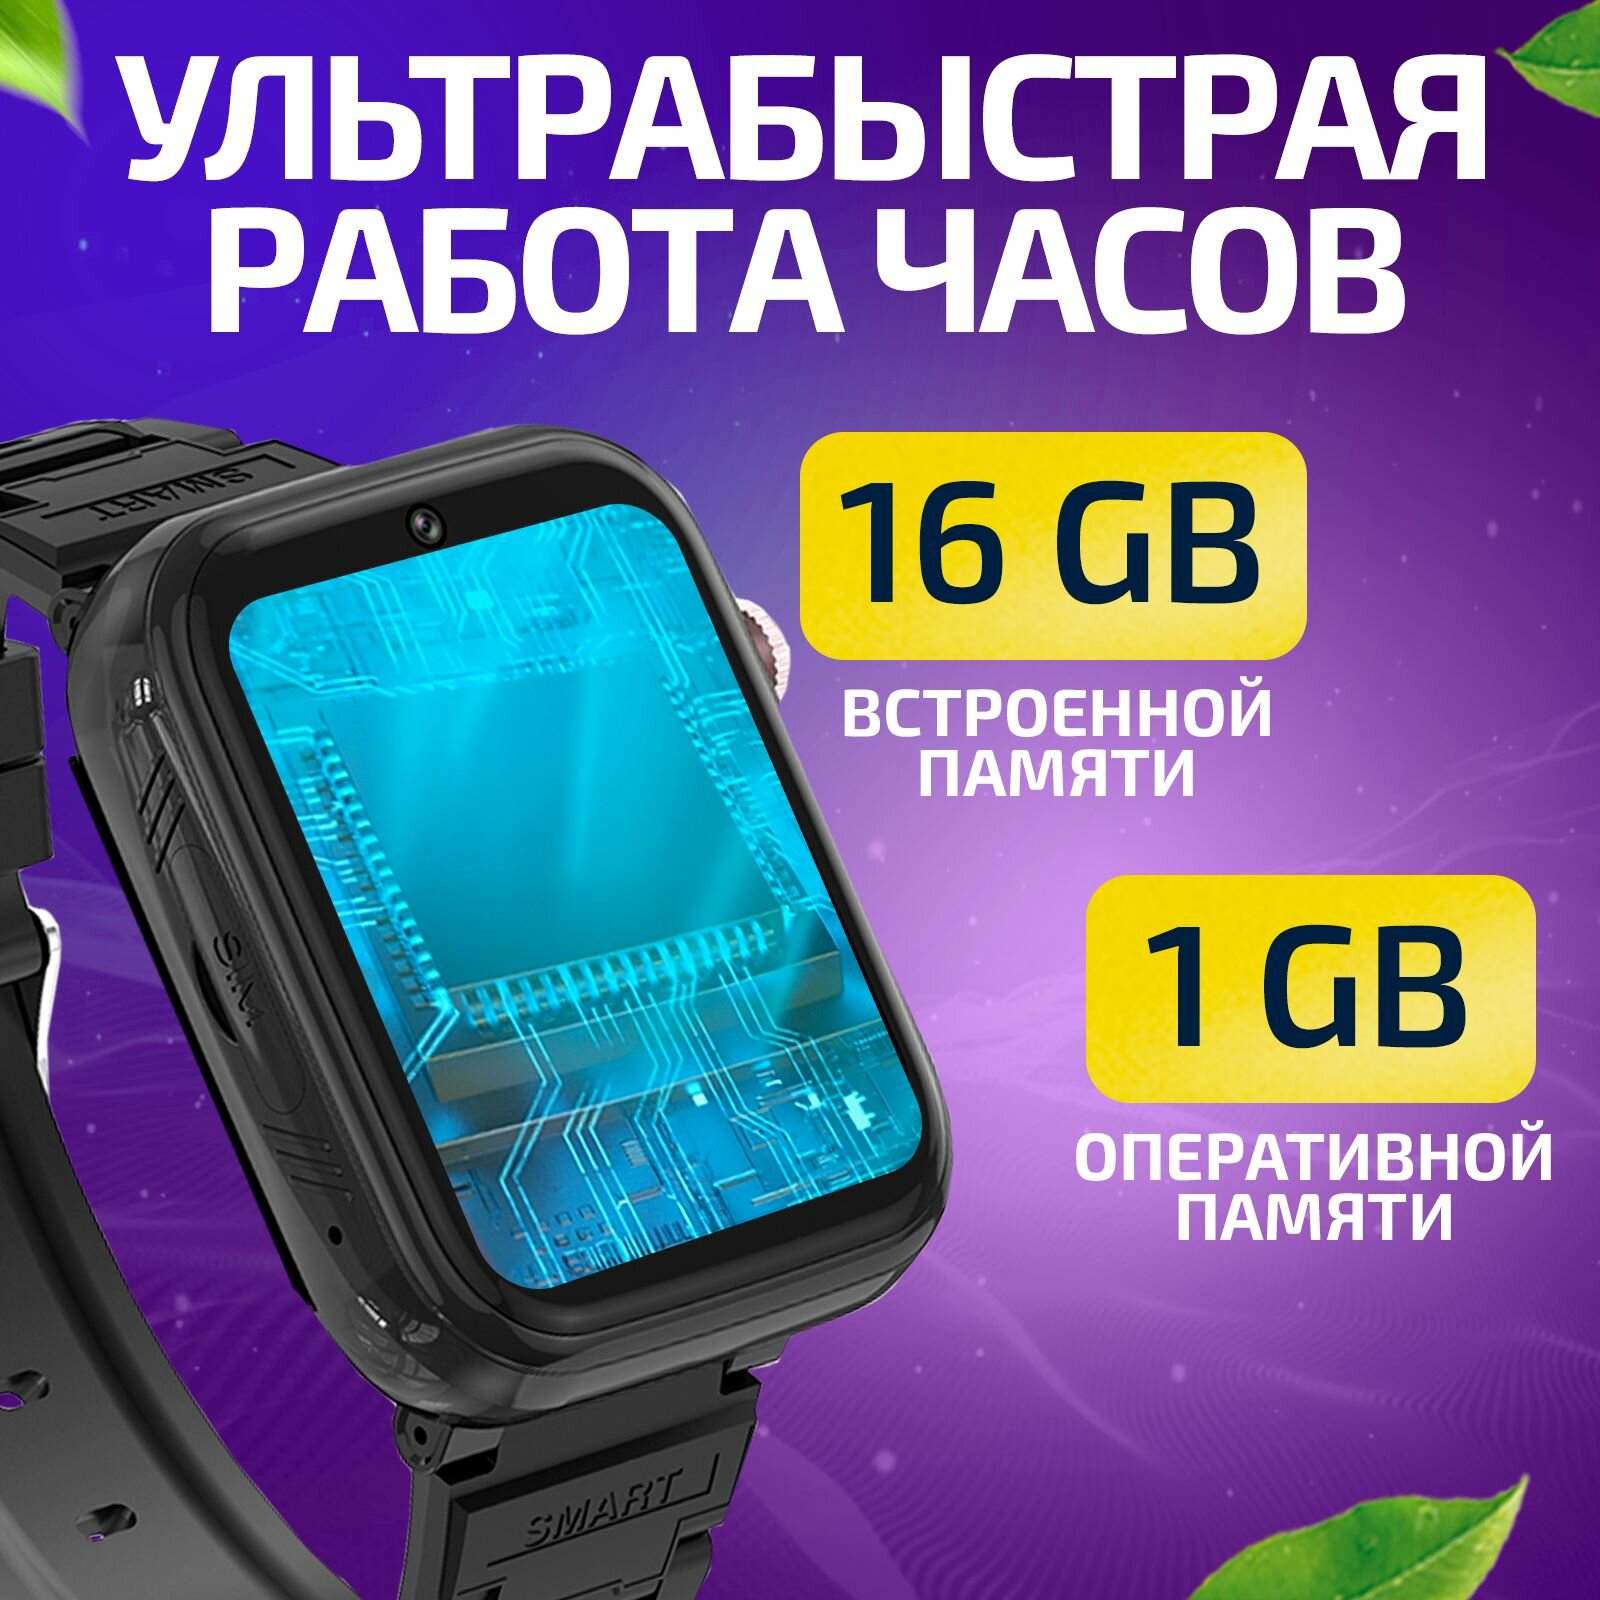 Часы для школьников Tiroki TRK-13 Android 81 с TikTok YouTube телефоном 4G GPS и видеозвонком  кнопка SOS видеоплеер аудиоплеер